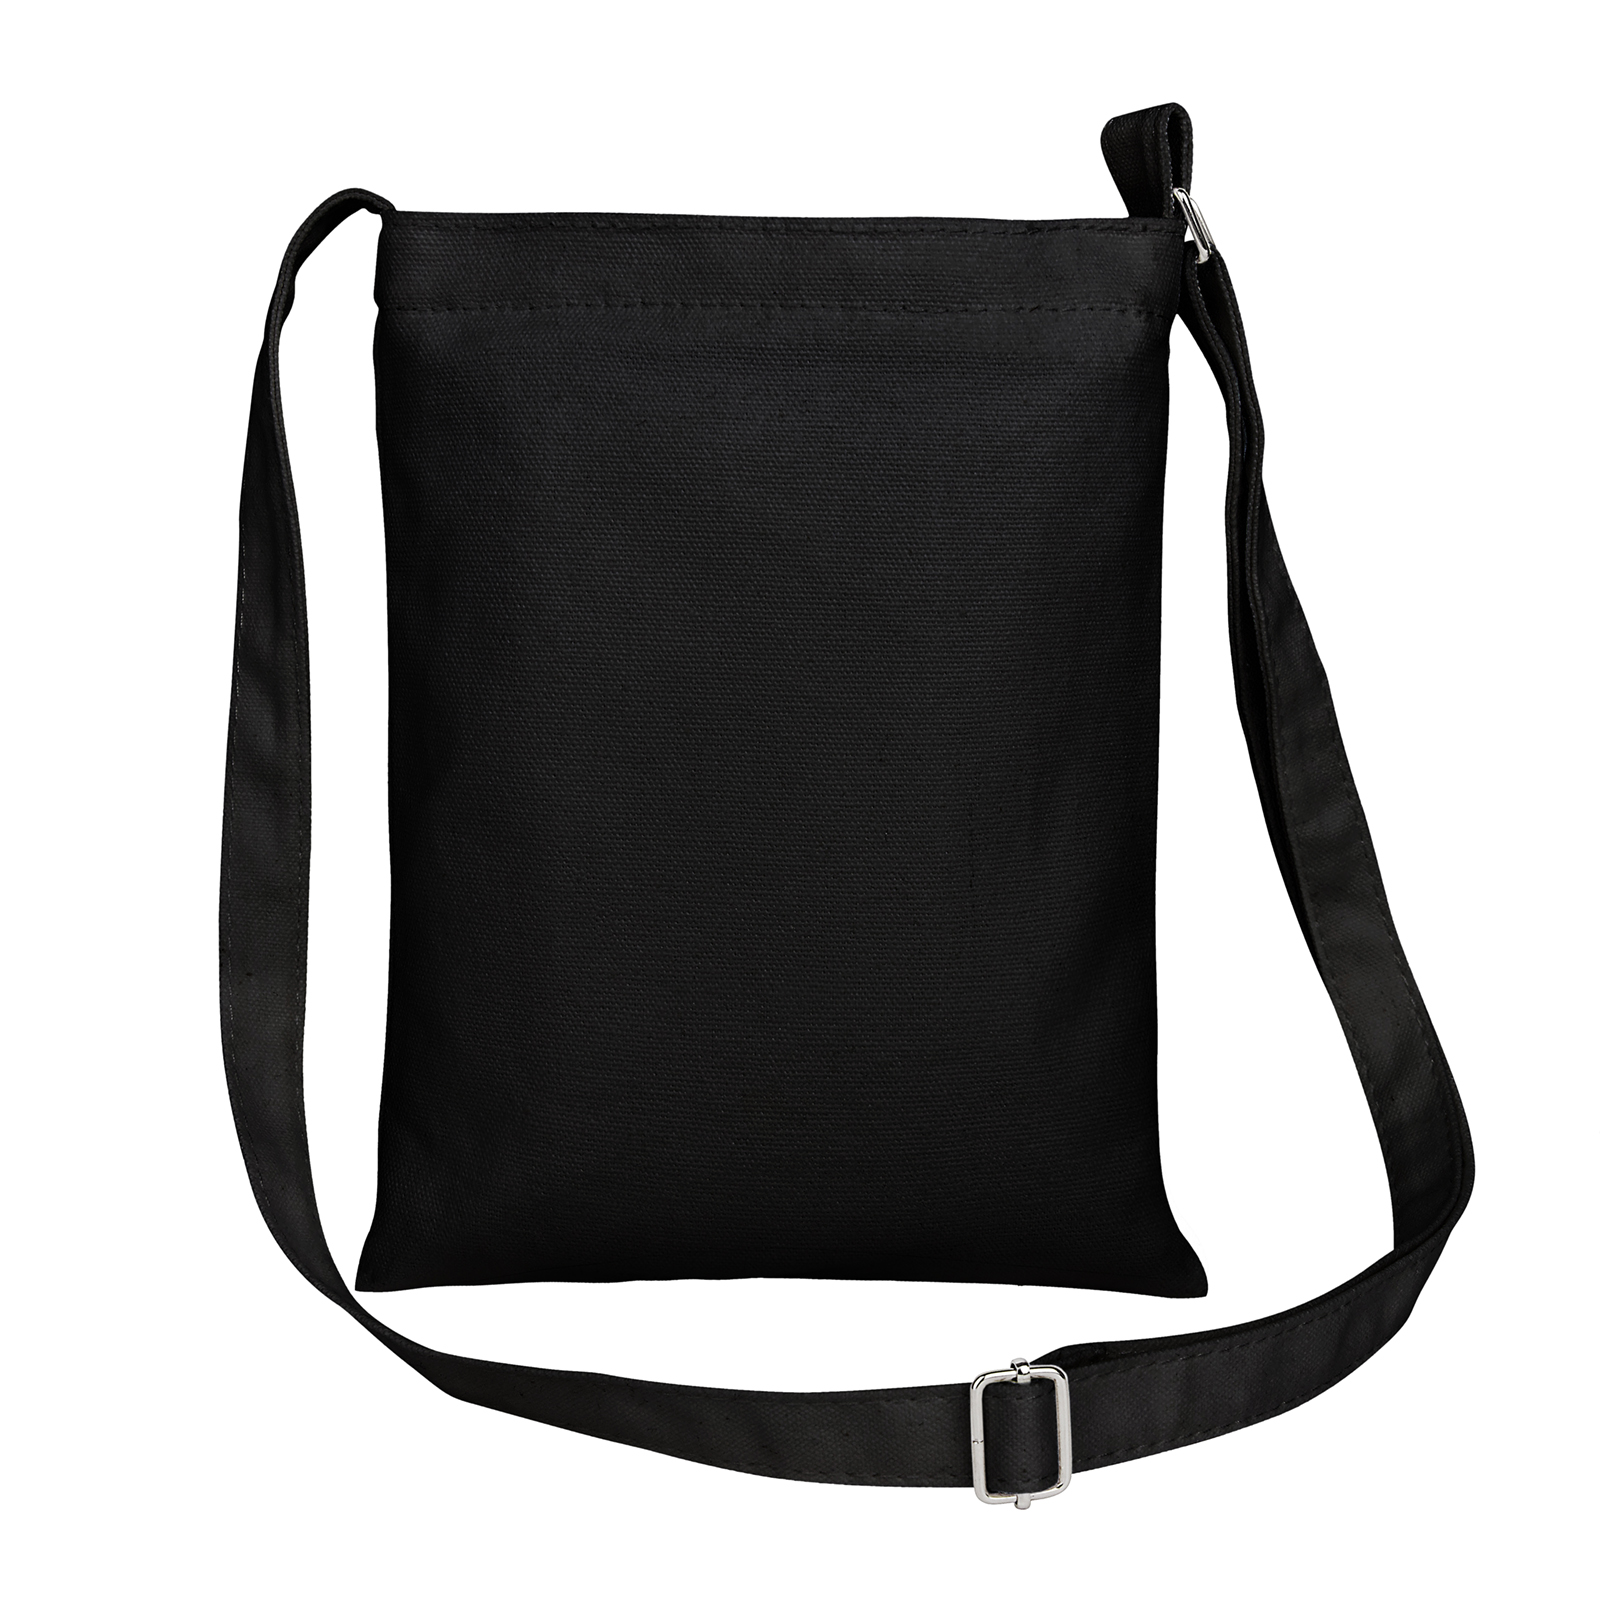 Muka Cross-body Shoulder Bag Purses, Black Mini Canvas Zipper Handbags for Kids Adult, 7 x 9